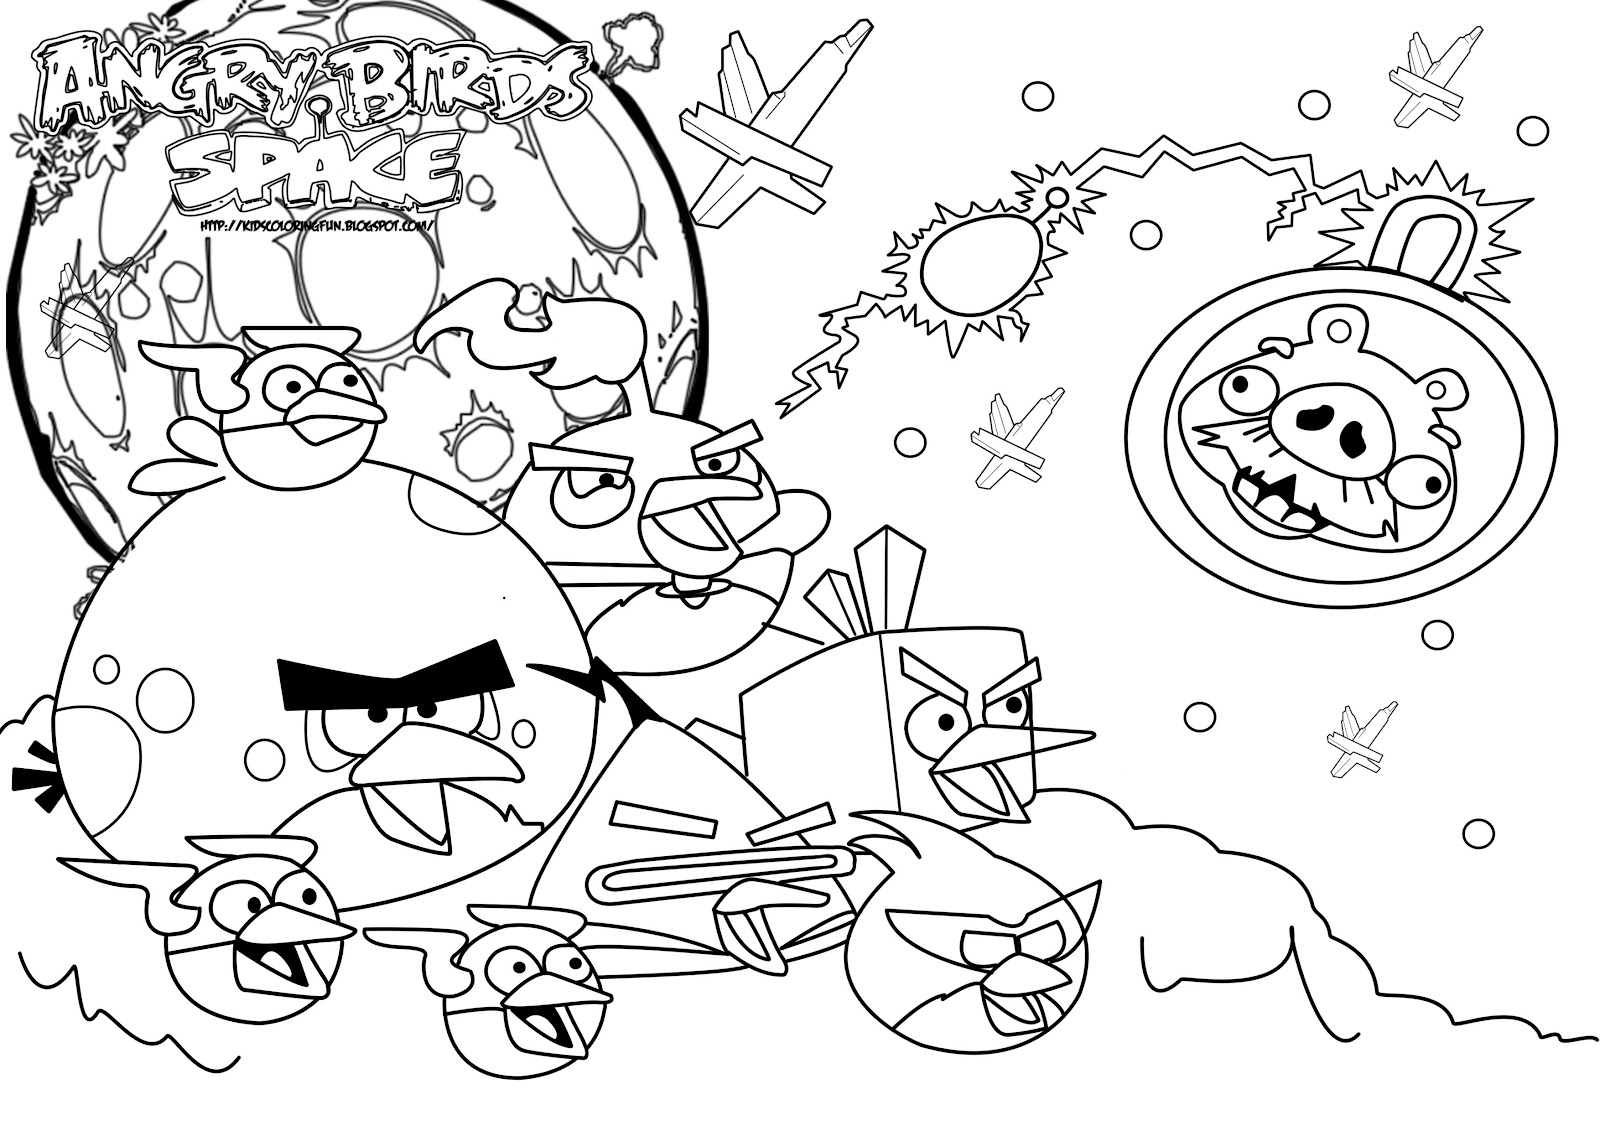 Скачать бесплатные раскраски для детей. Раскраски детские Angry Birds. Раскраски для детей с играми. Раскраски для детей скачать. Бесплатные детские раскраски.